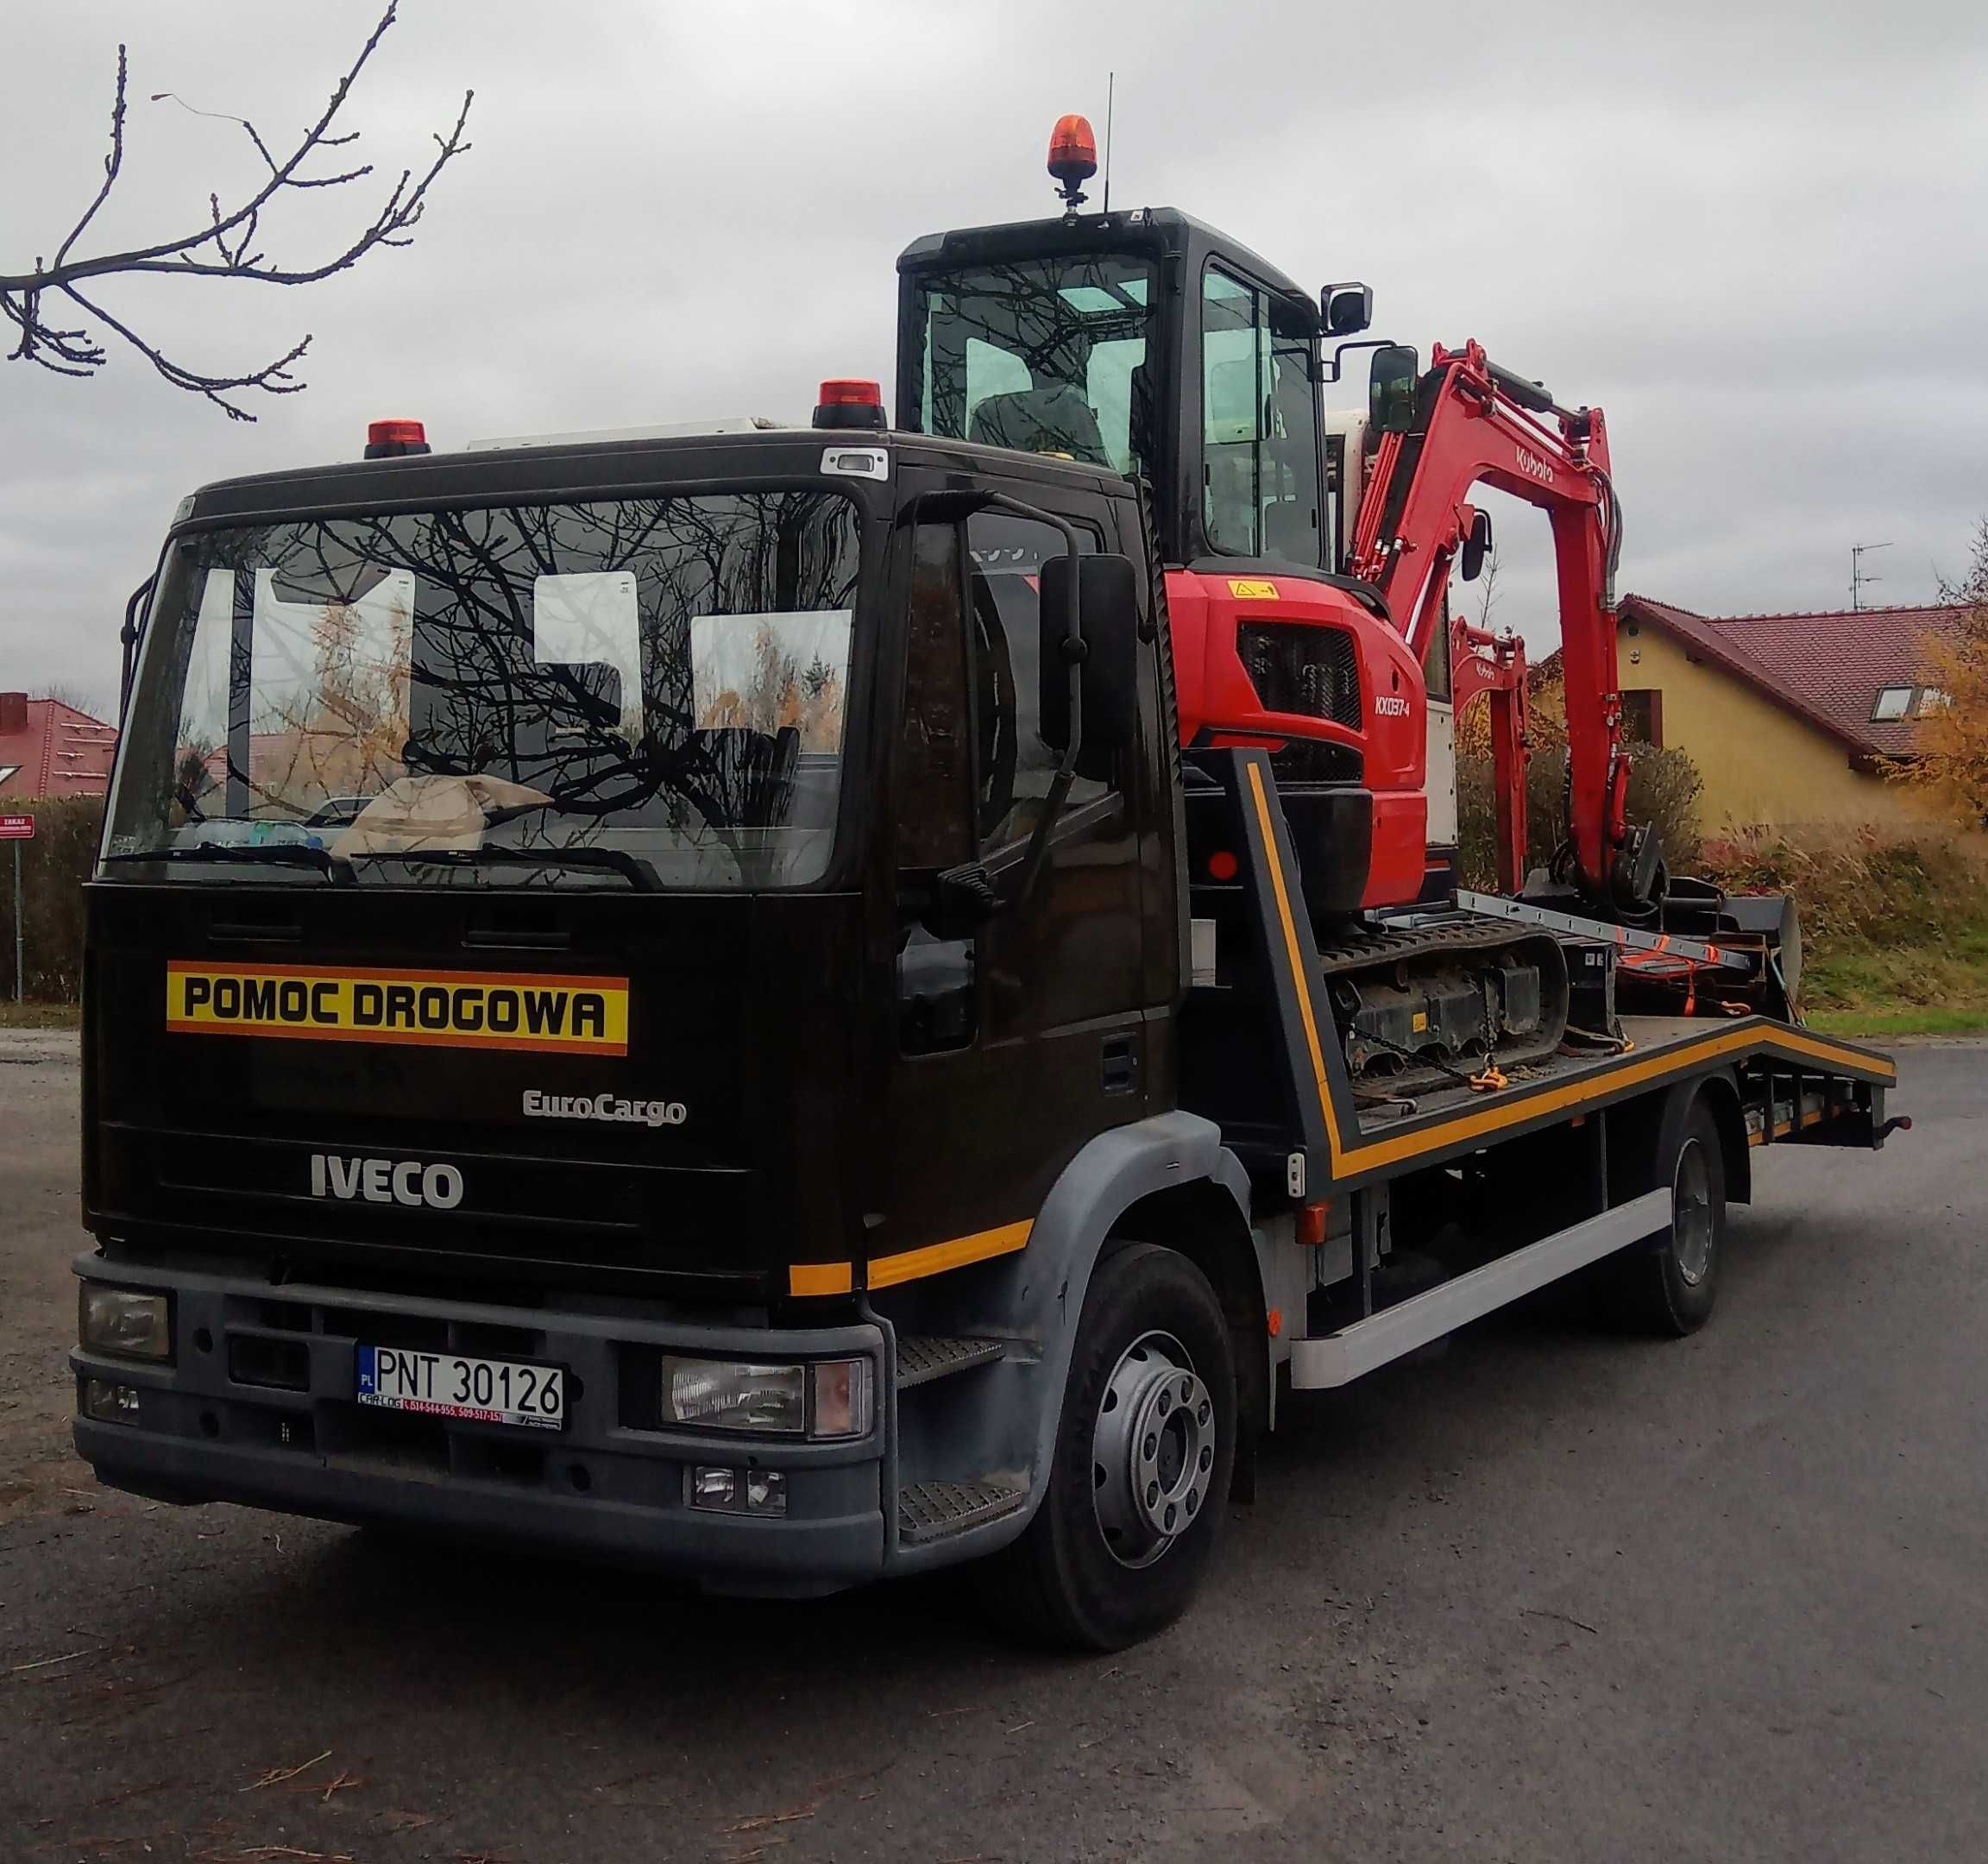 Pomoc Drogowa transport maszyn budowlanych i rolniczych,samochodów